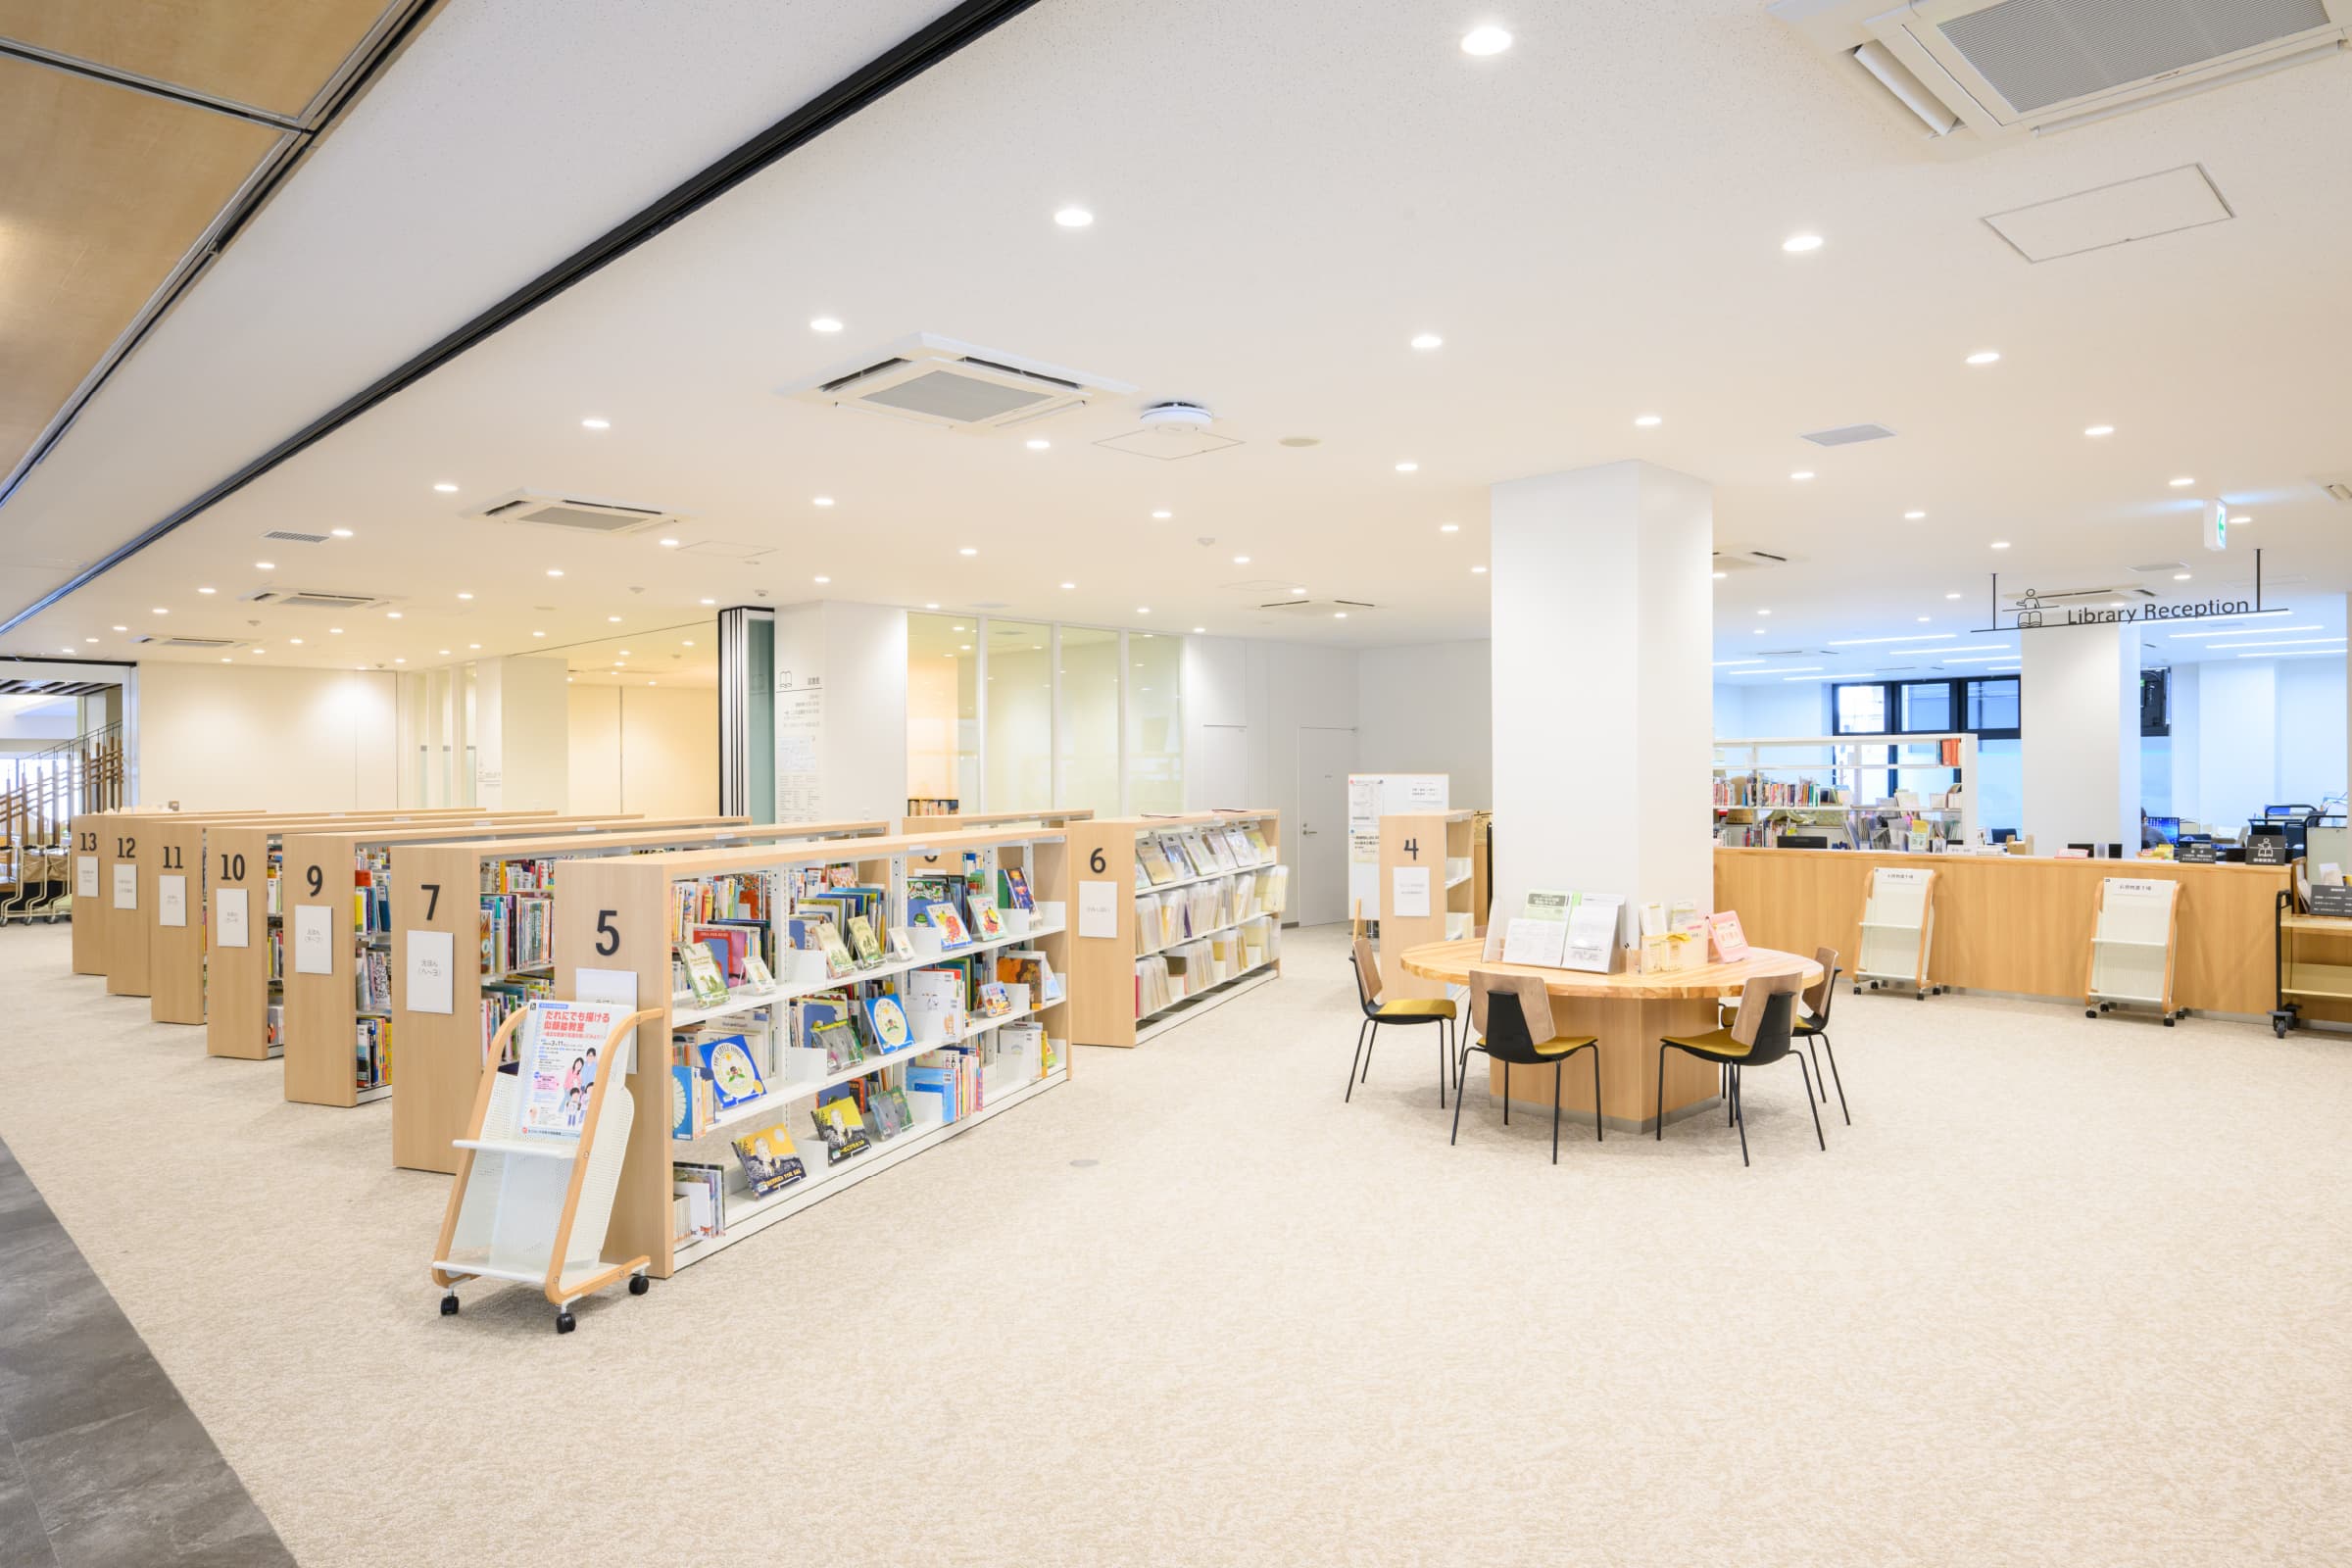 図書館受付／こども図書館スペースでは、本を手に取りやすいよう低書架を配置。受付からは周囲を見渡せ、利用者の困りごとにも対応しやすい。また受付前は広い空間で利用者も使いやすい。